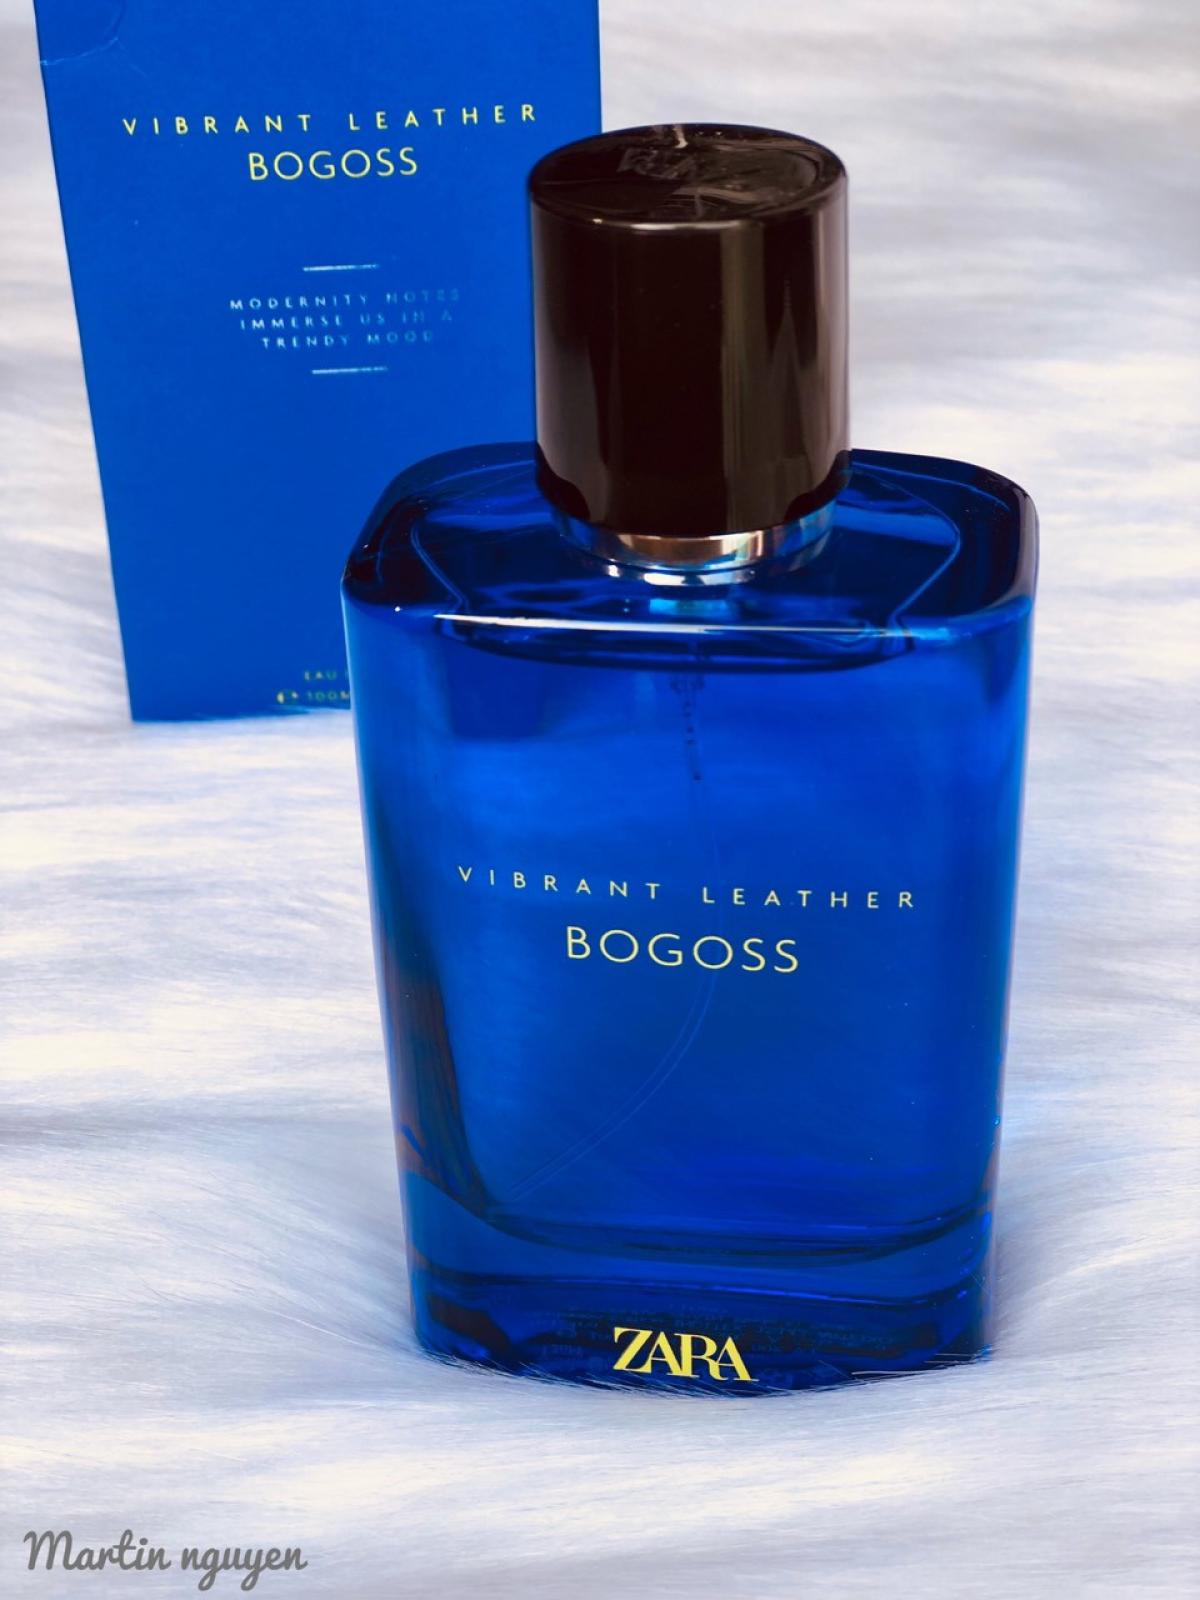 Vibrant Leather Bogoss Zara cologne a fragrance for men 2021